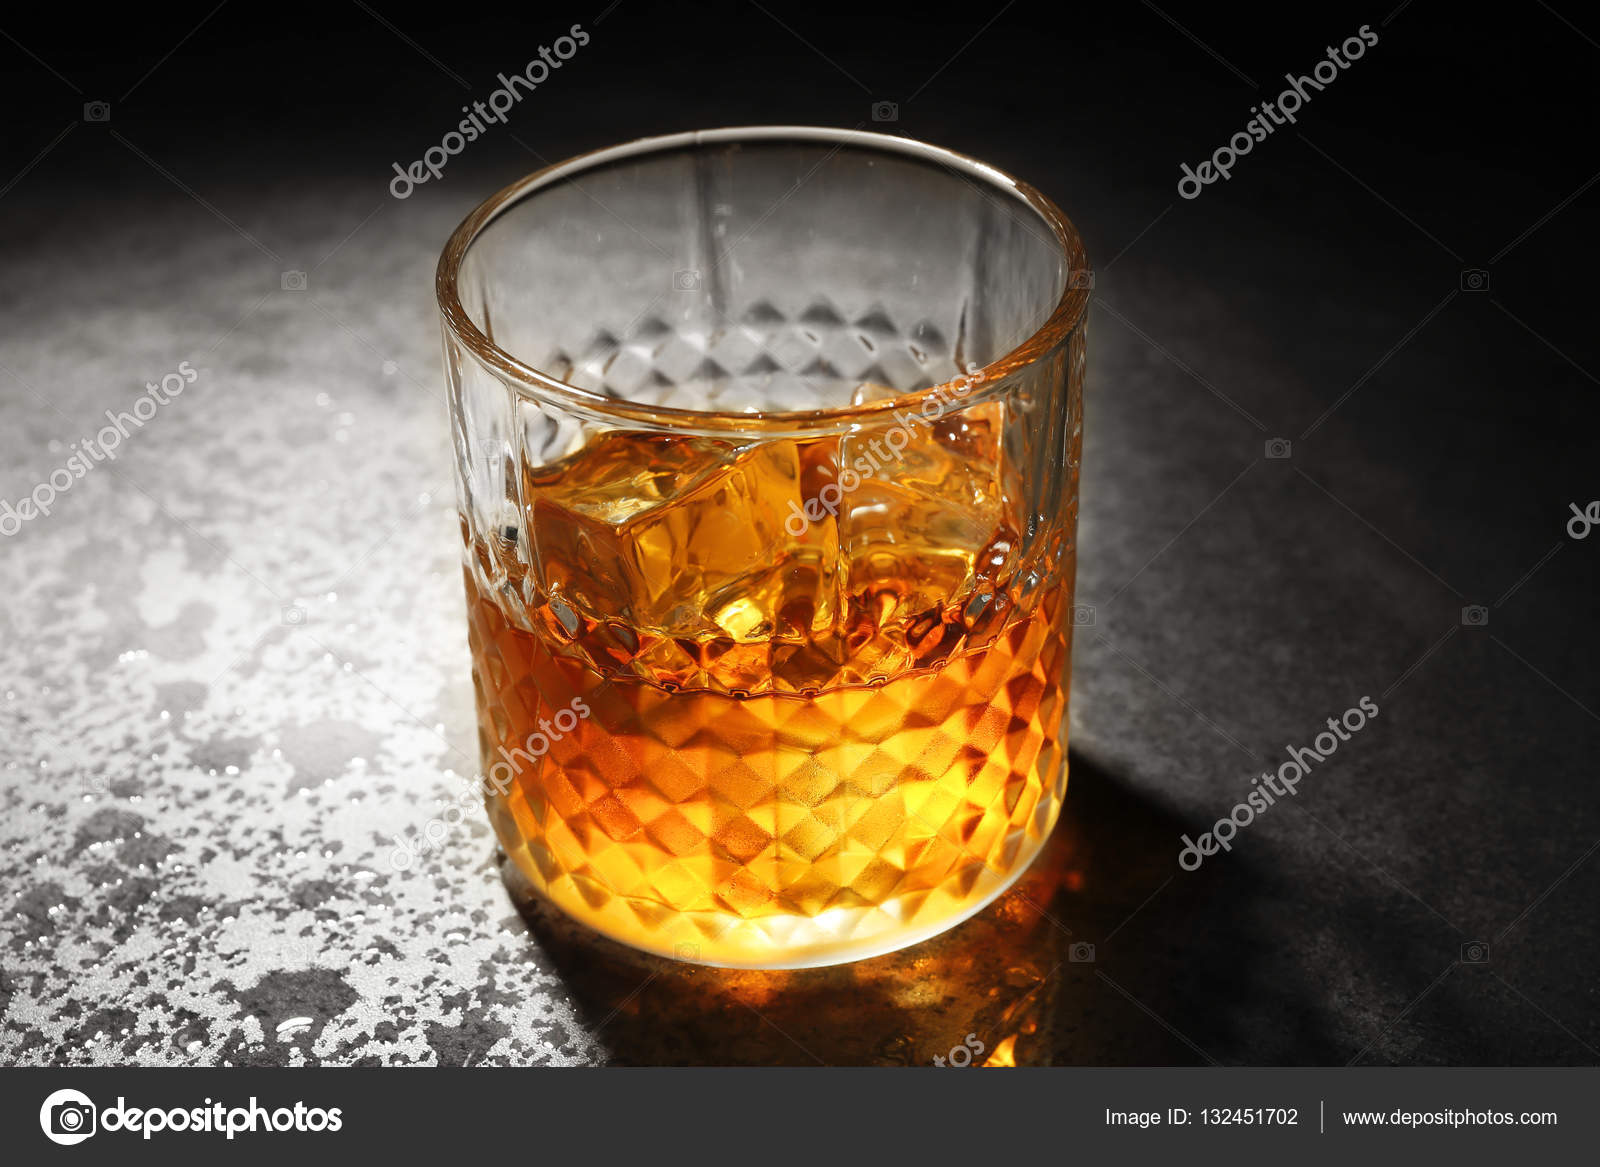 whisky på gråt tekstureret bord — Stock-foto © belchonock #132451702